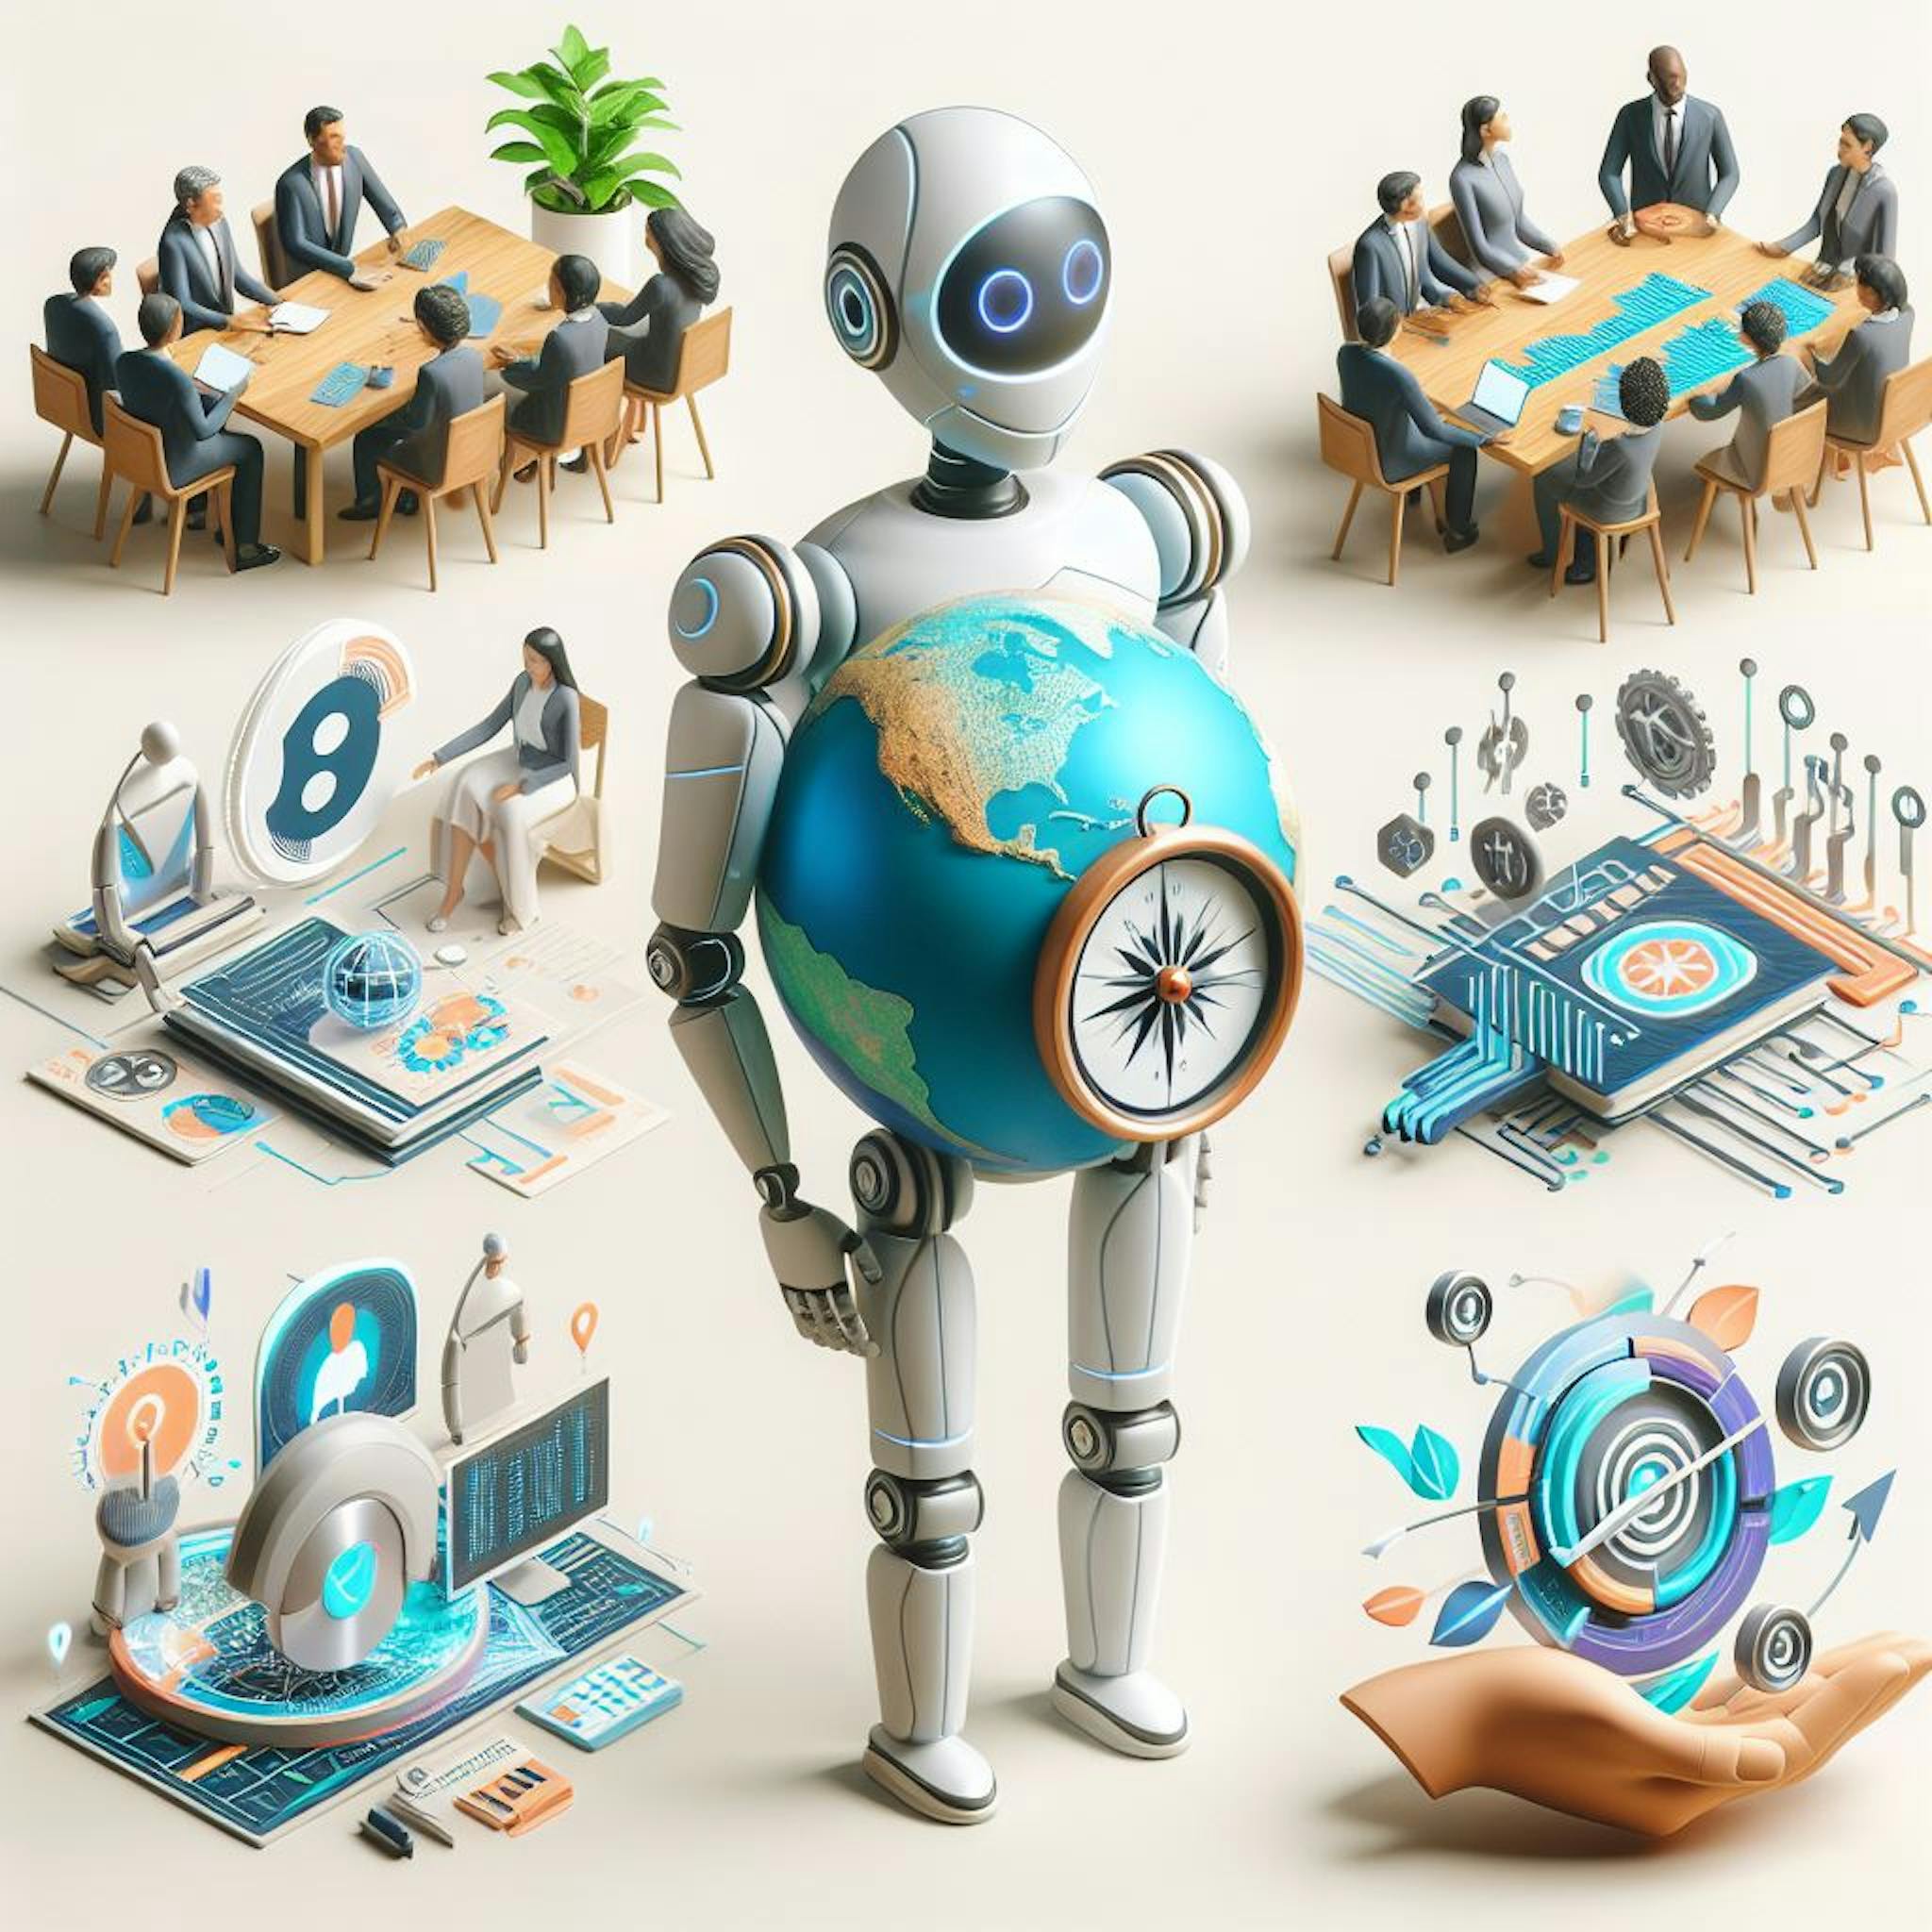 featured image - Chiến lược quản trị AI có trách nhiệm